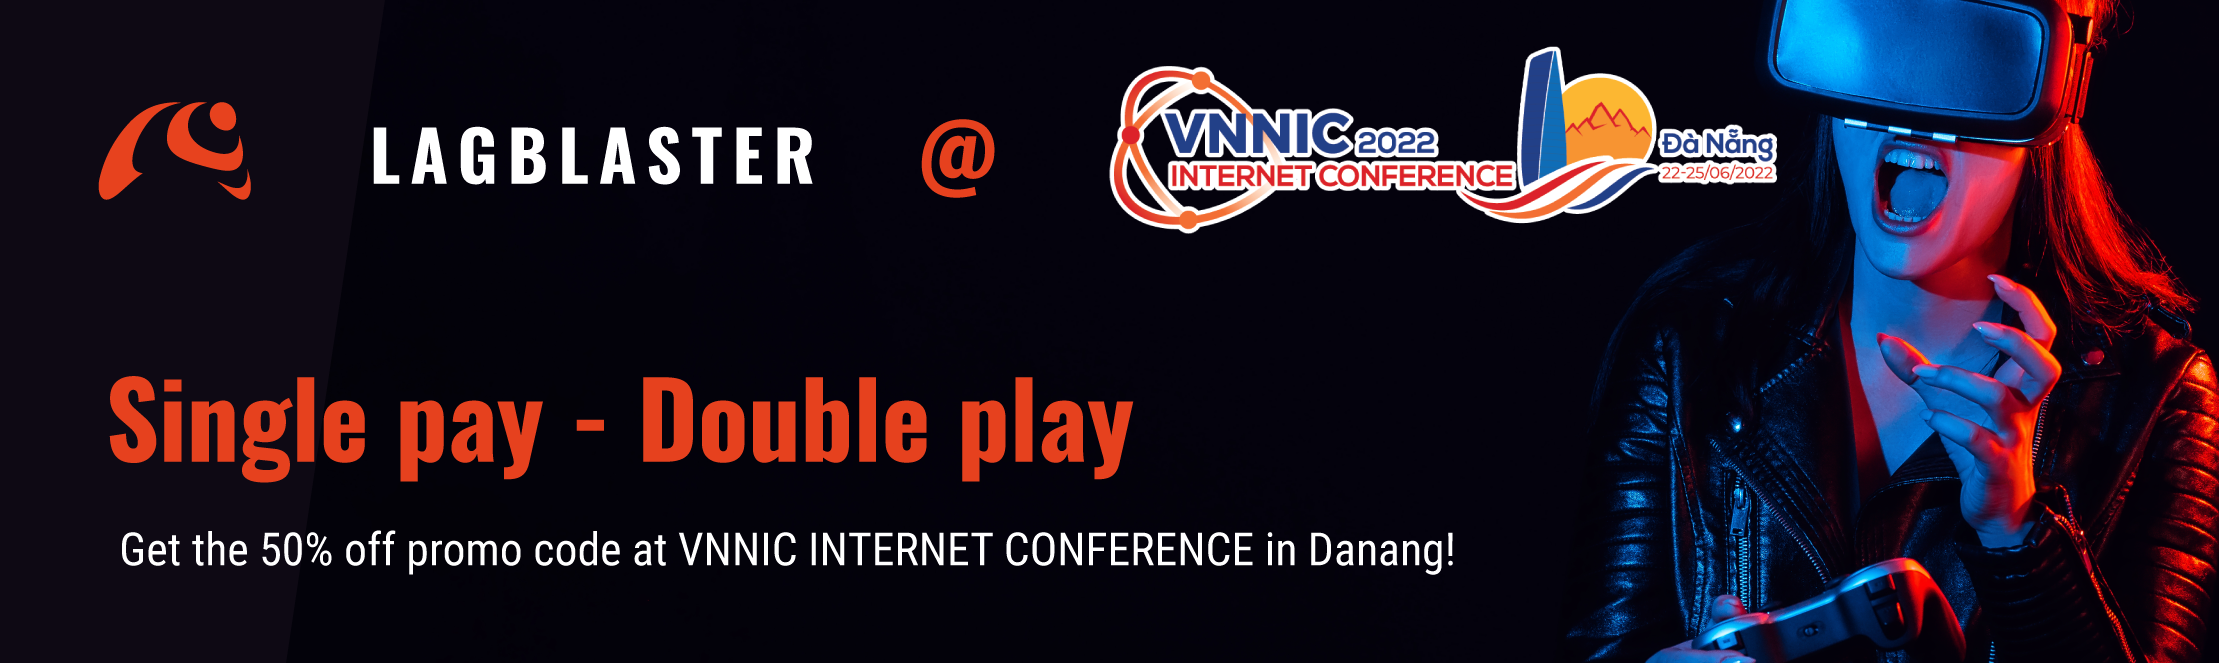 VNNIC Internet Conference 2022